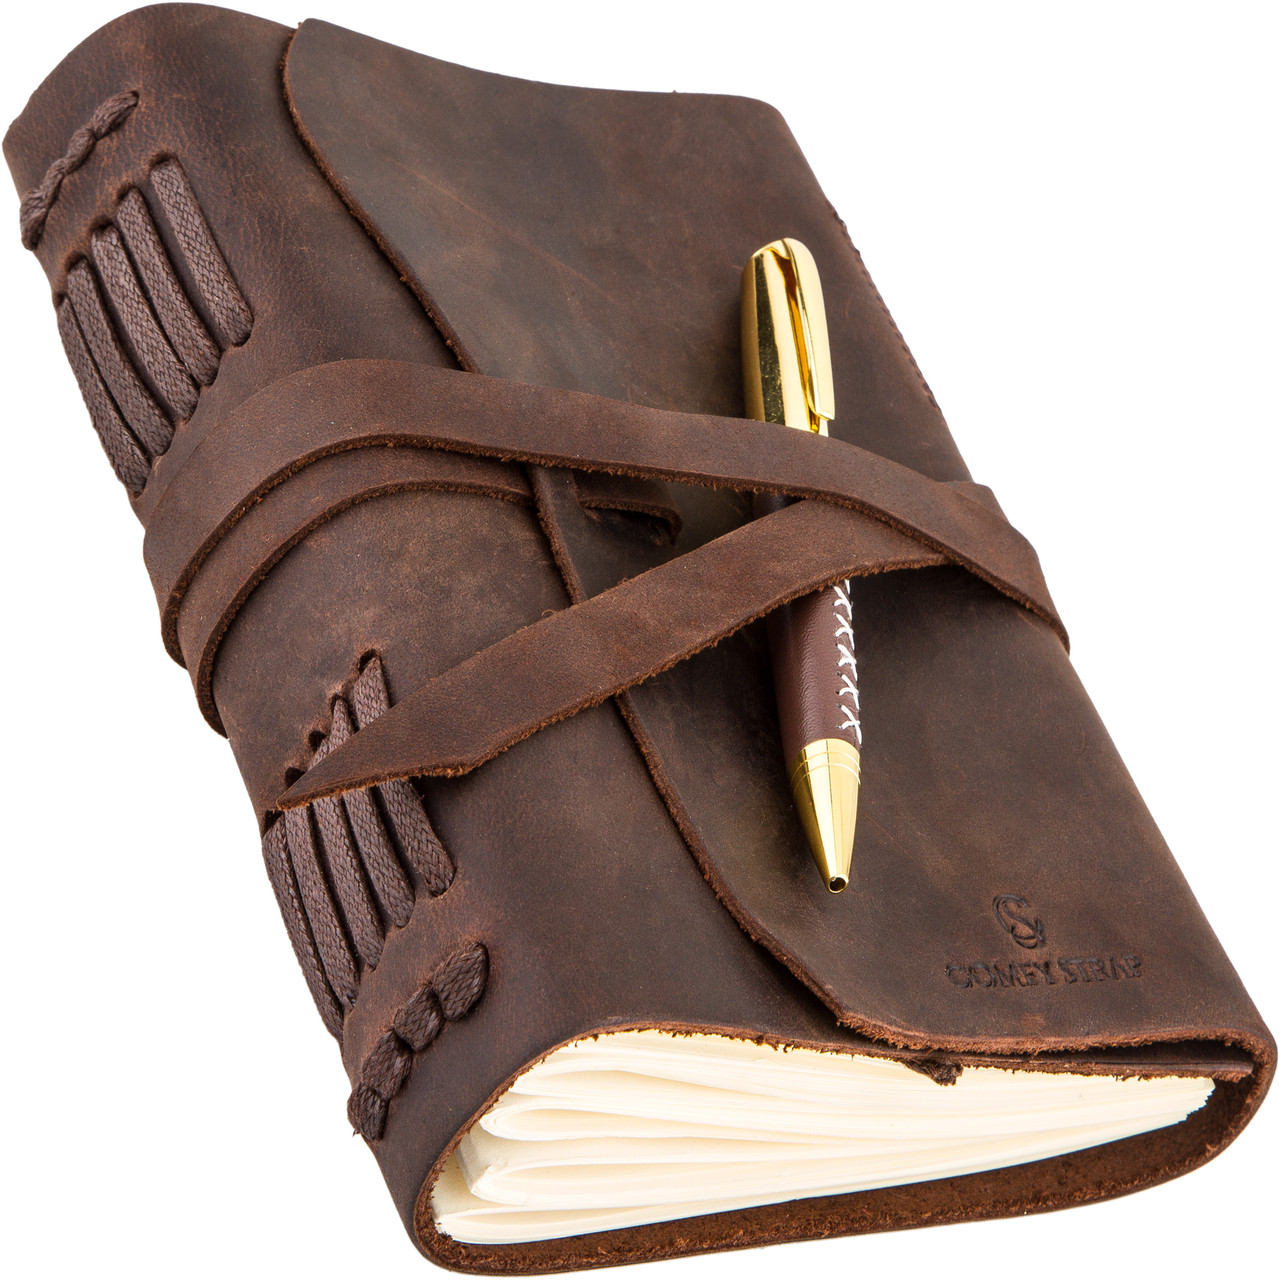 

Блокнот кожаный COMFY STRAP 002 коричневый В6 с ручкой ручная работа в линию 300 листов + Подарочная упаковка